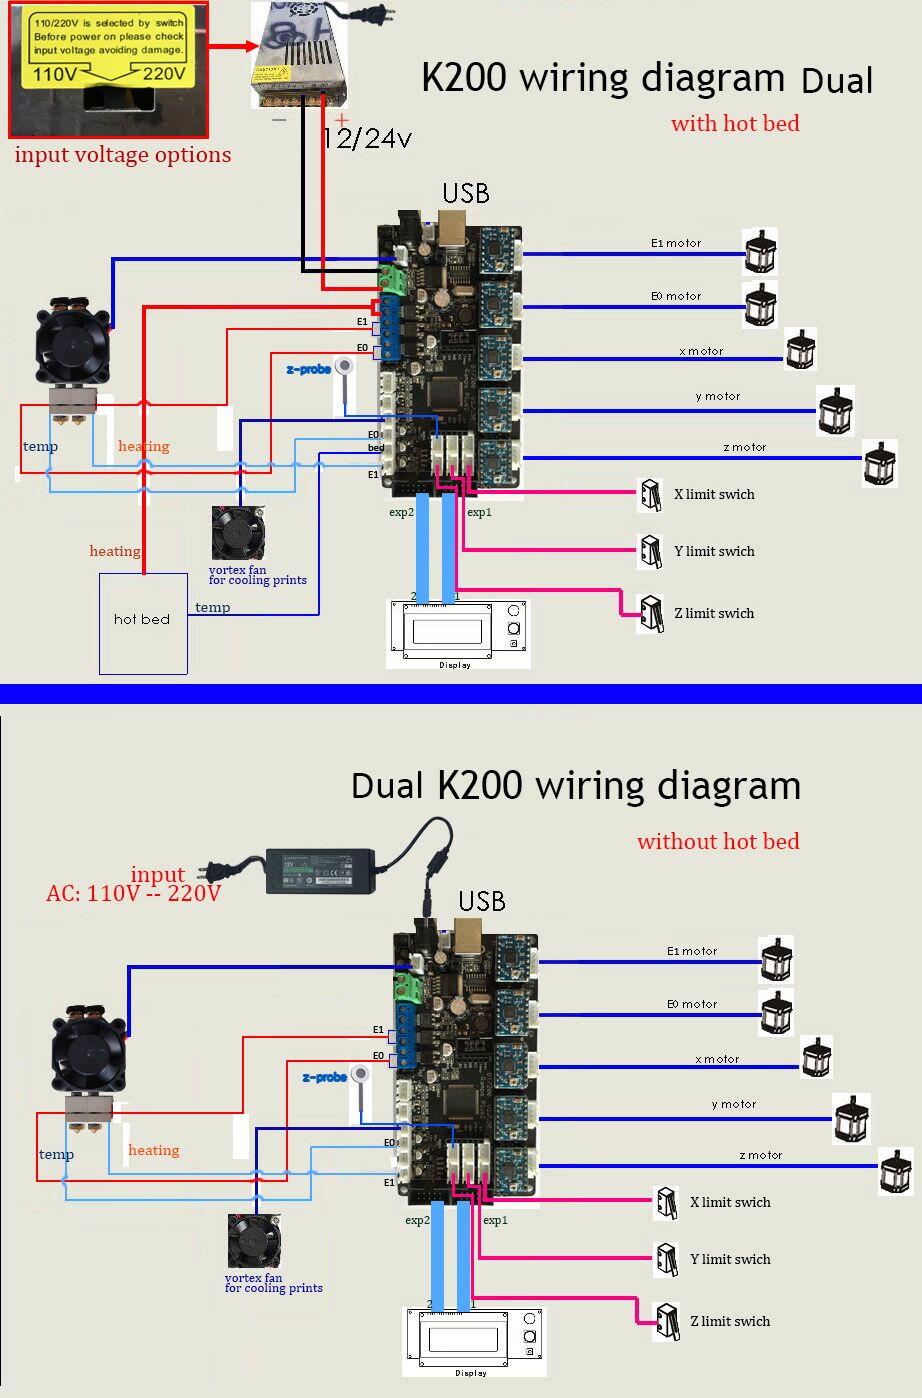 K200 dual wiring diagram.jpg